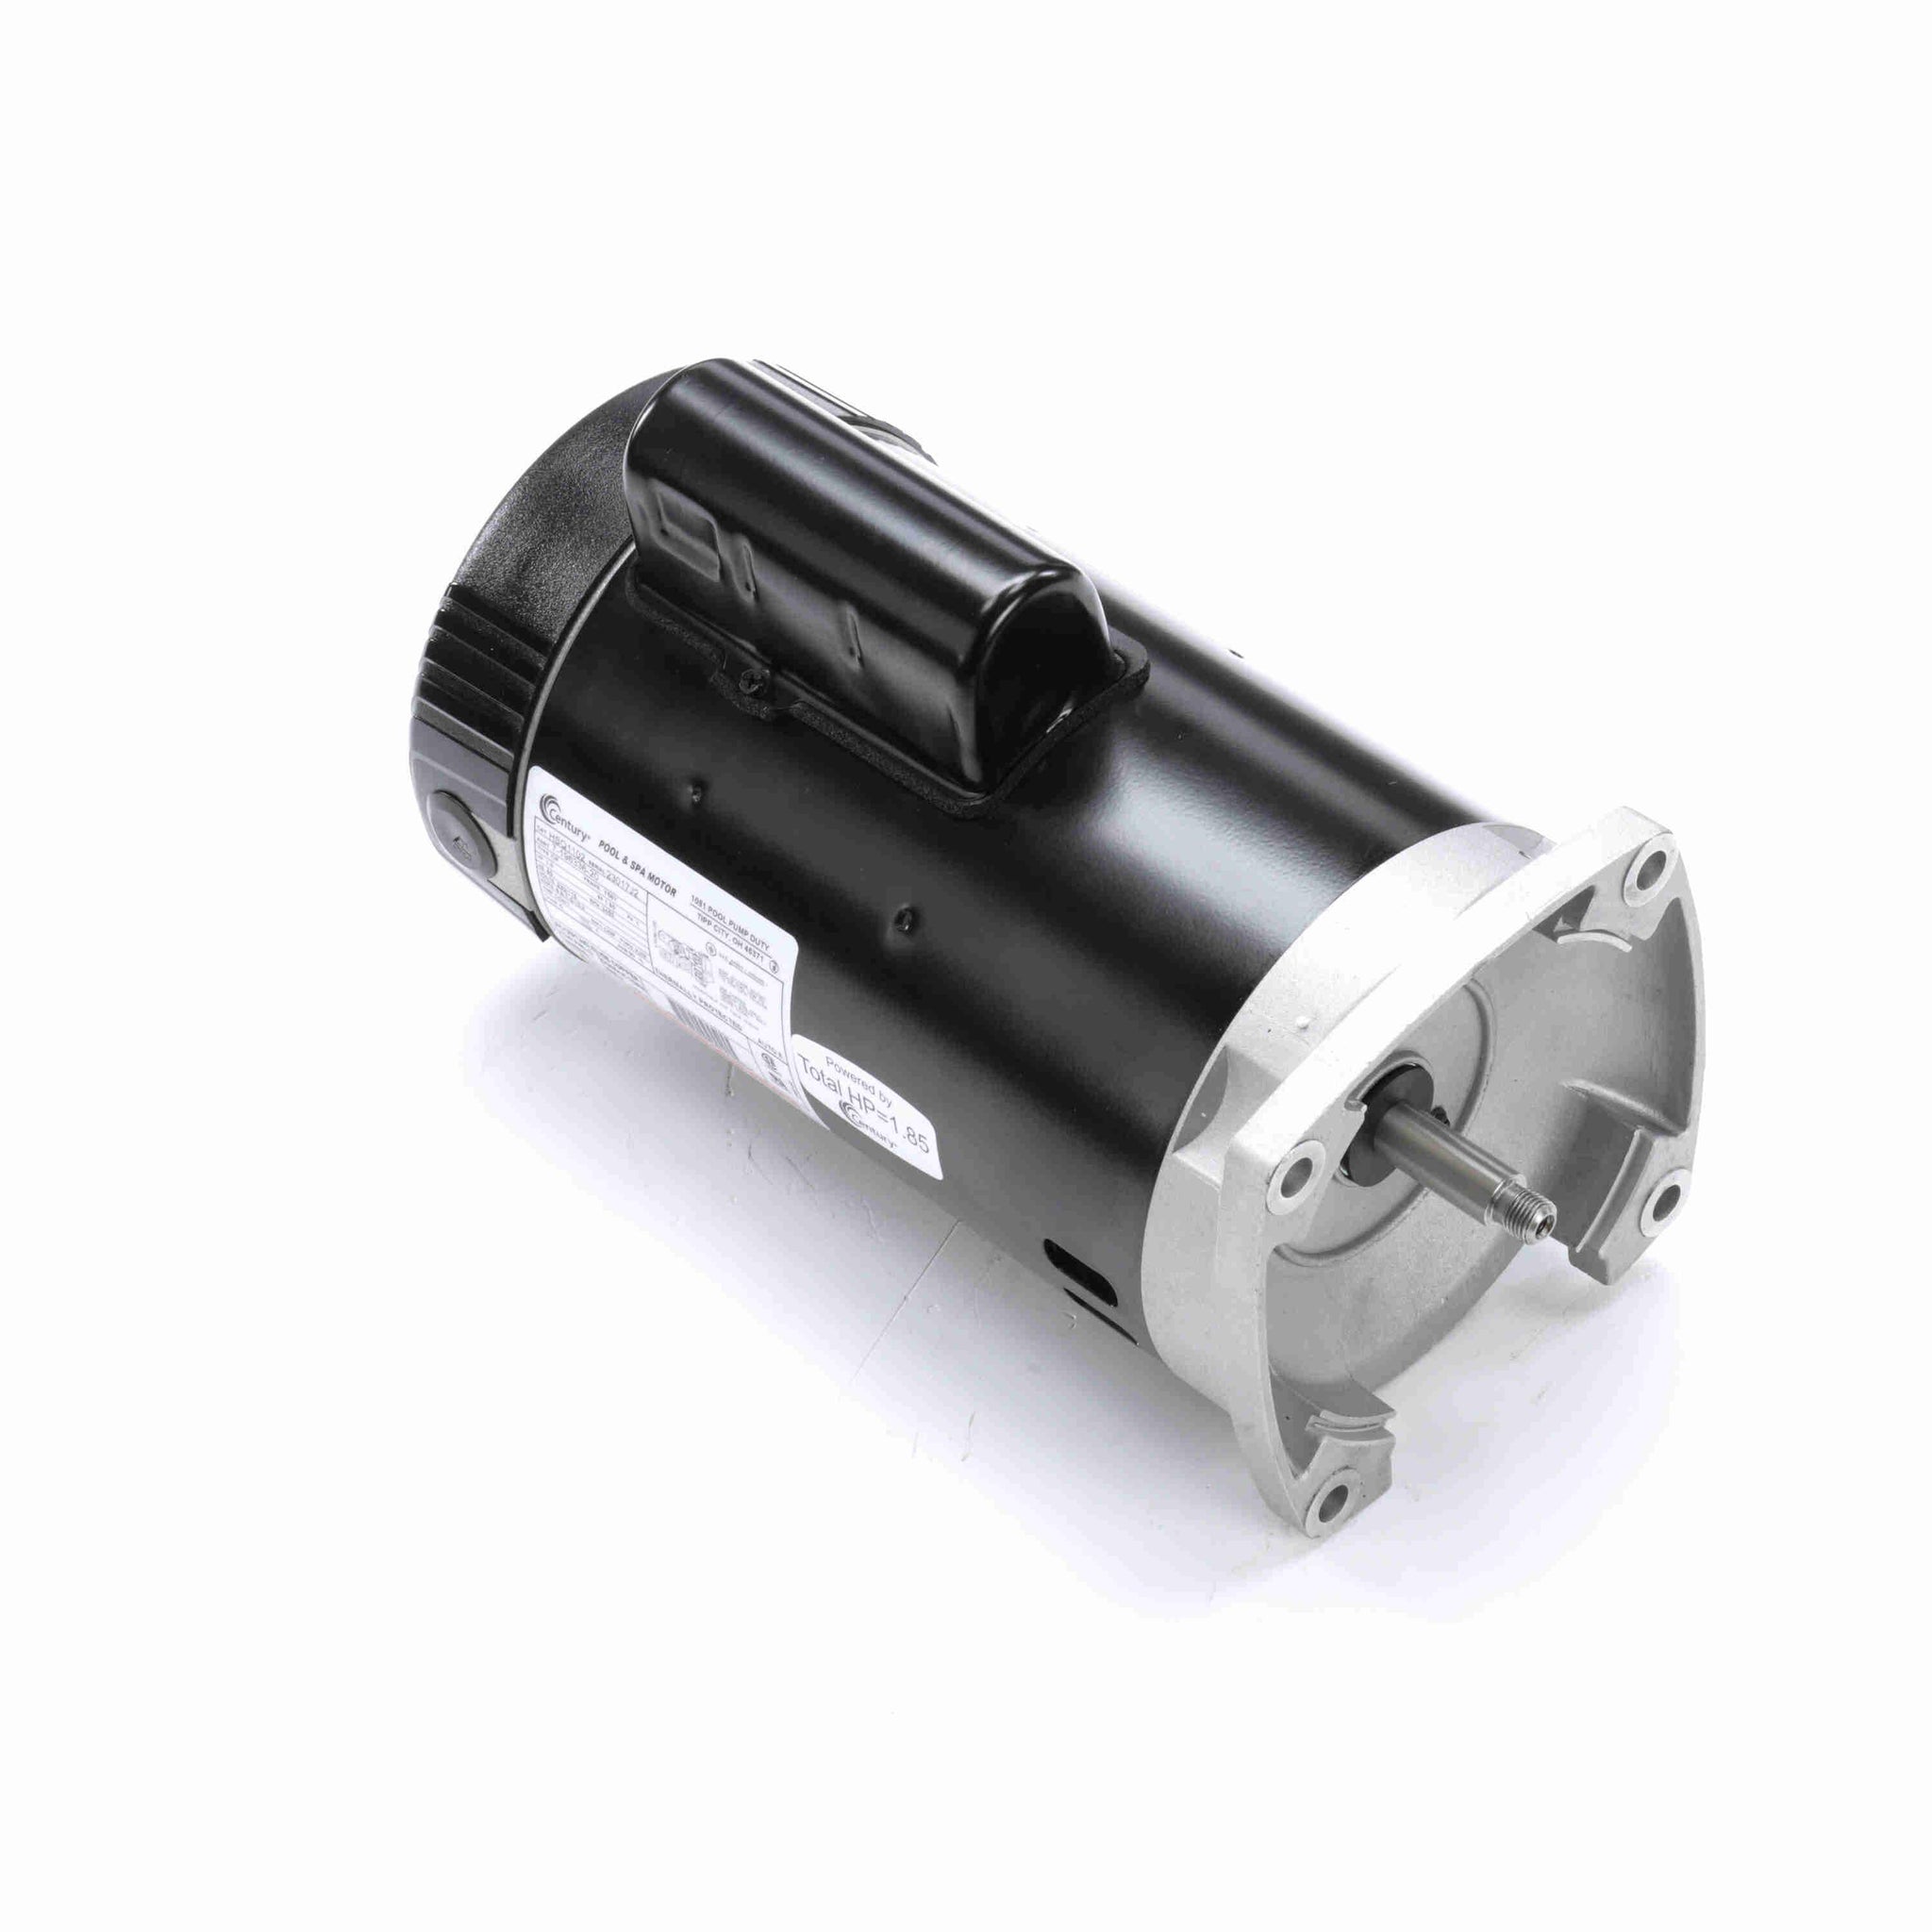 HSQ1102 - 1.0 HP Pool Pump Motor, 1 phase, 3600 RPM, 230/115 V, 56Y Frame, ODP - Hardware & Moreee